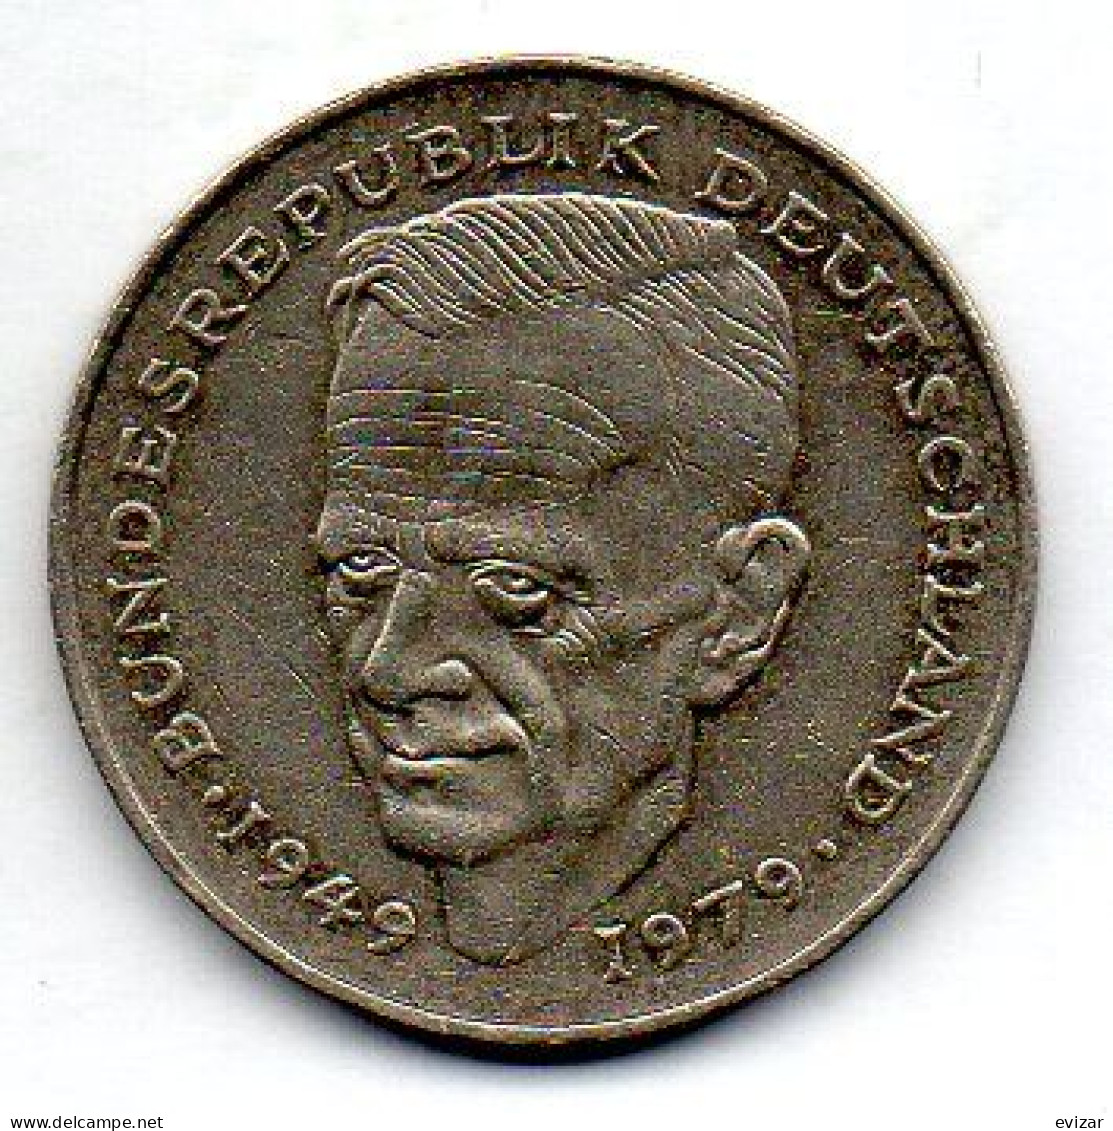 GERMANY - FEDERAL REPUBLIC, 2 Mark, Copper-Nickel, Year 1984-J, KM # 149 - 2 Mark